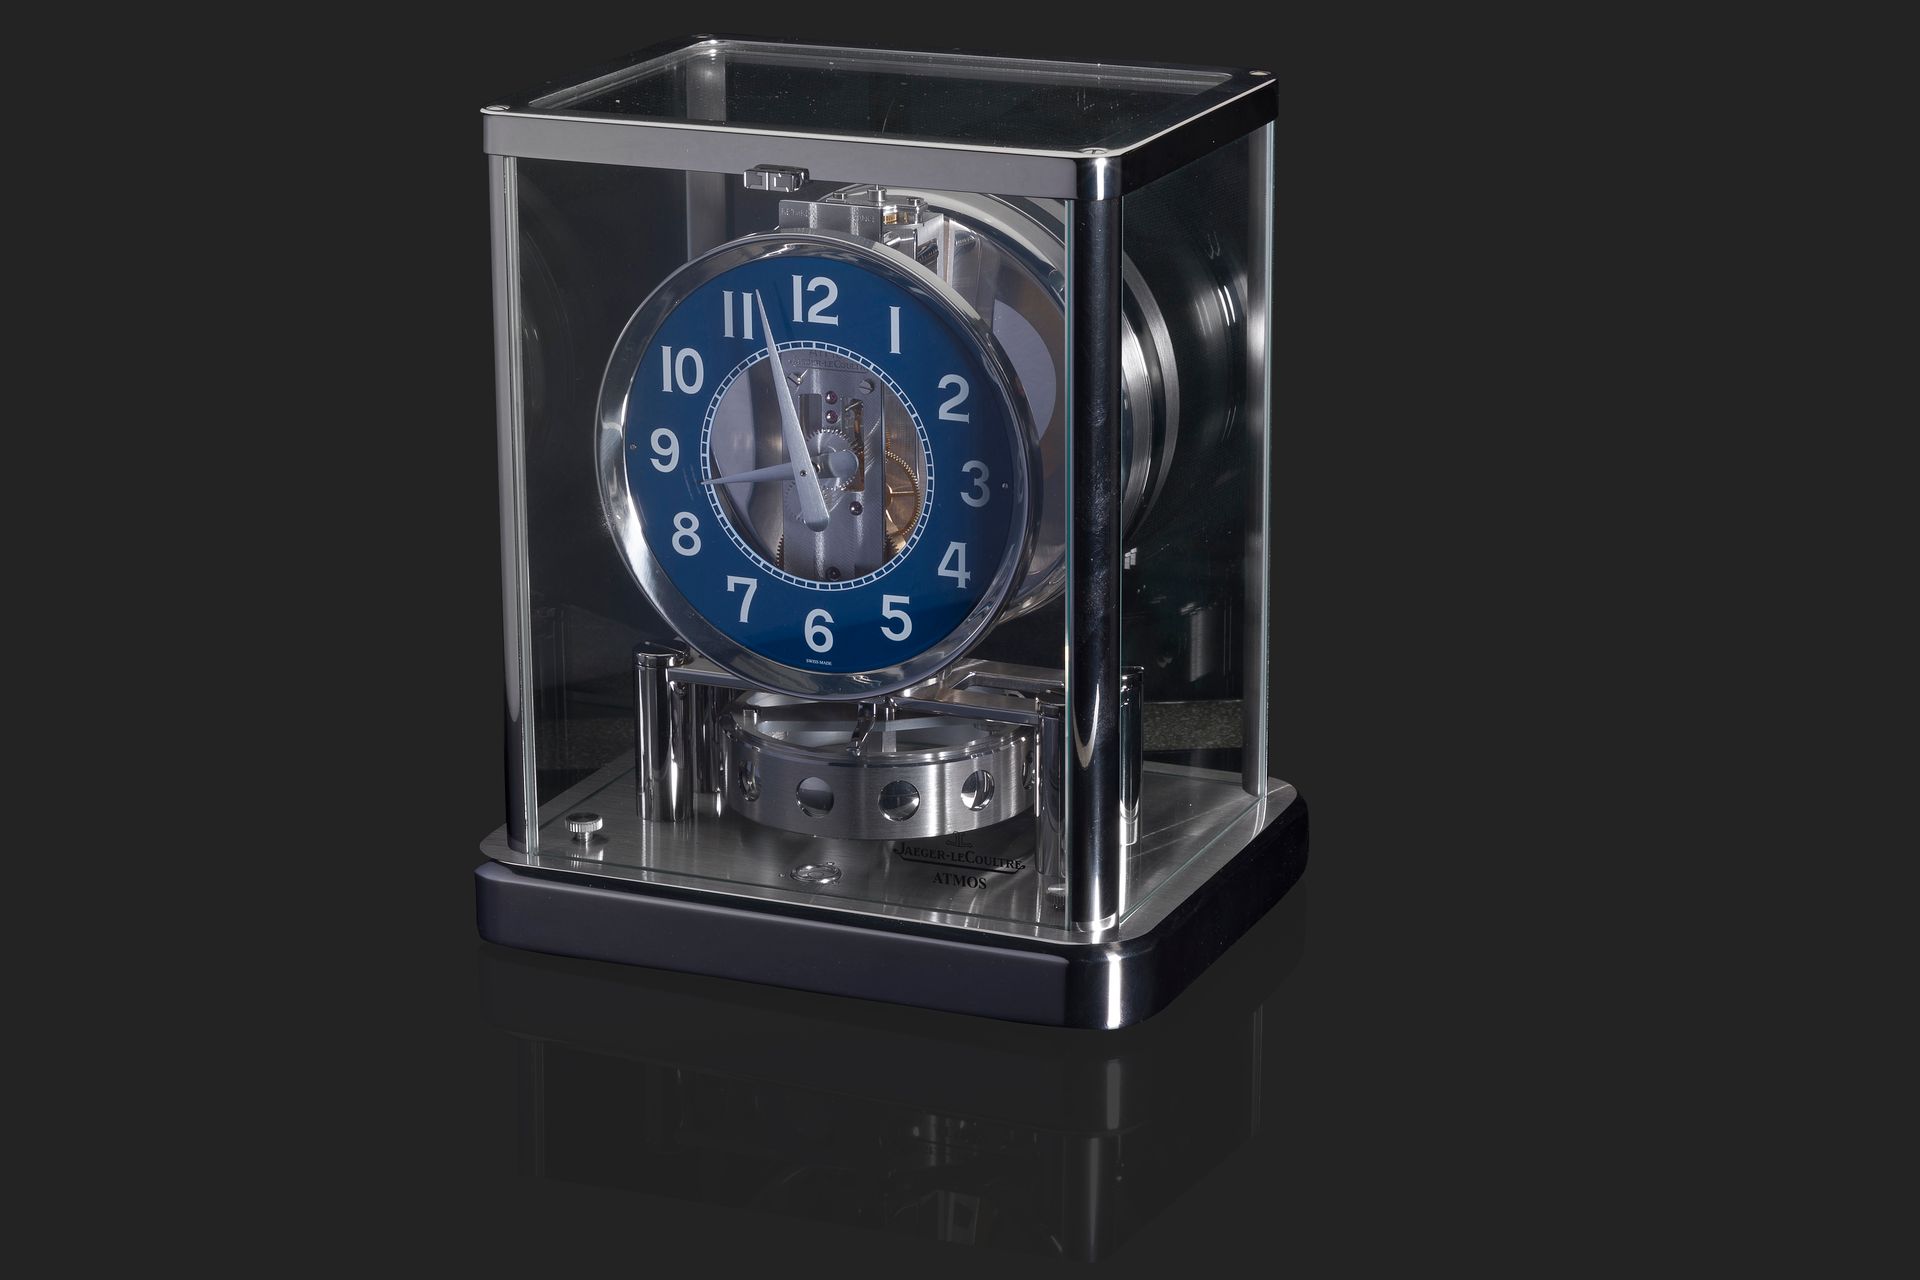 Null 积家 (jaeger lecoultre)
美丽的Atmos时钟
镀铬金属和玻璃的小柜。
蓝色表盘上有阿拉伯数字。
万年历机械机芯。
表壳